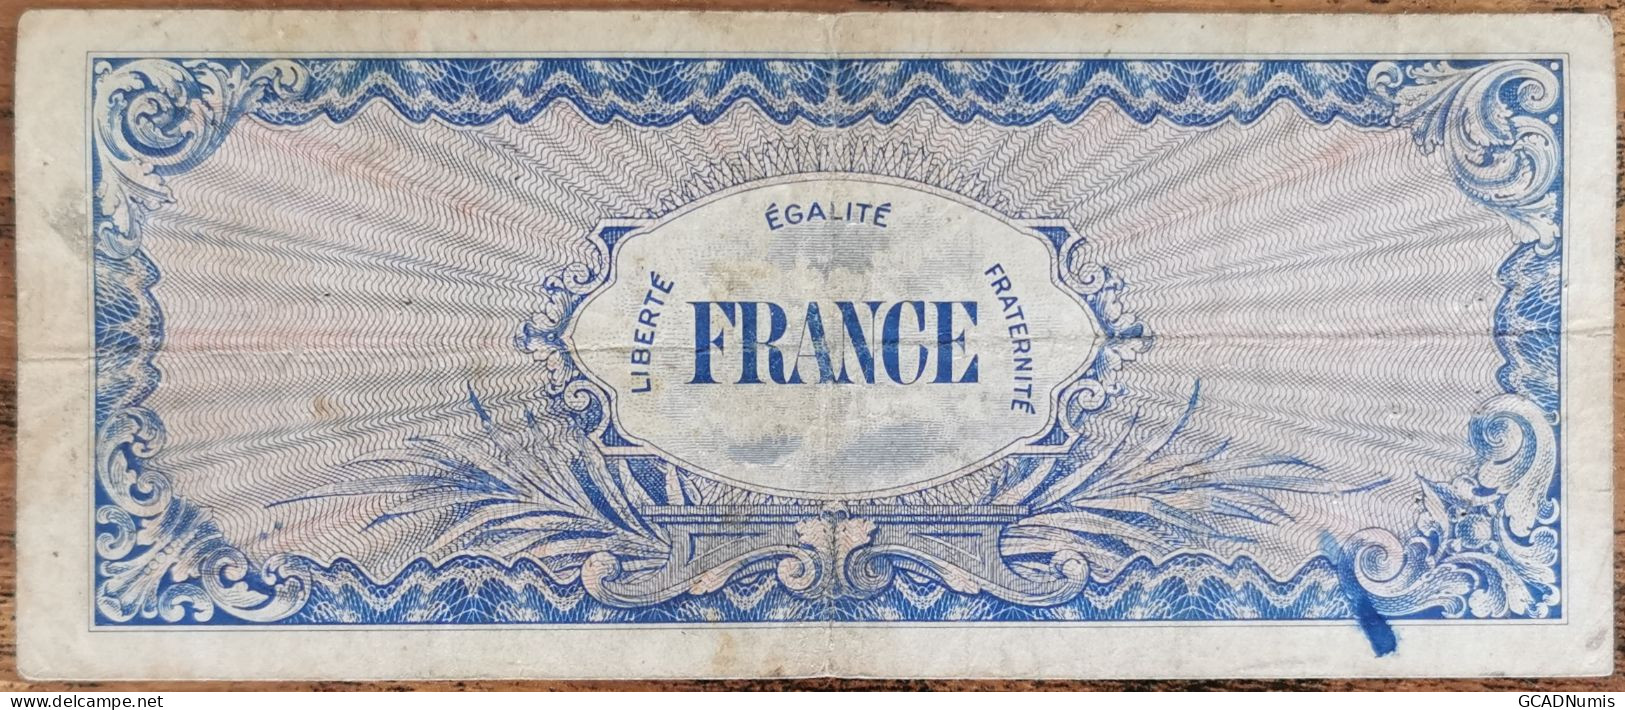 Billet 100 Francs 1944 FRANCE Préparer Par Les USA Pour La Libération Série 7 - 1944 Drapeau/France